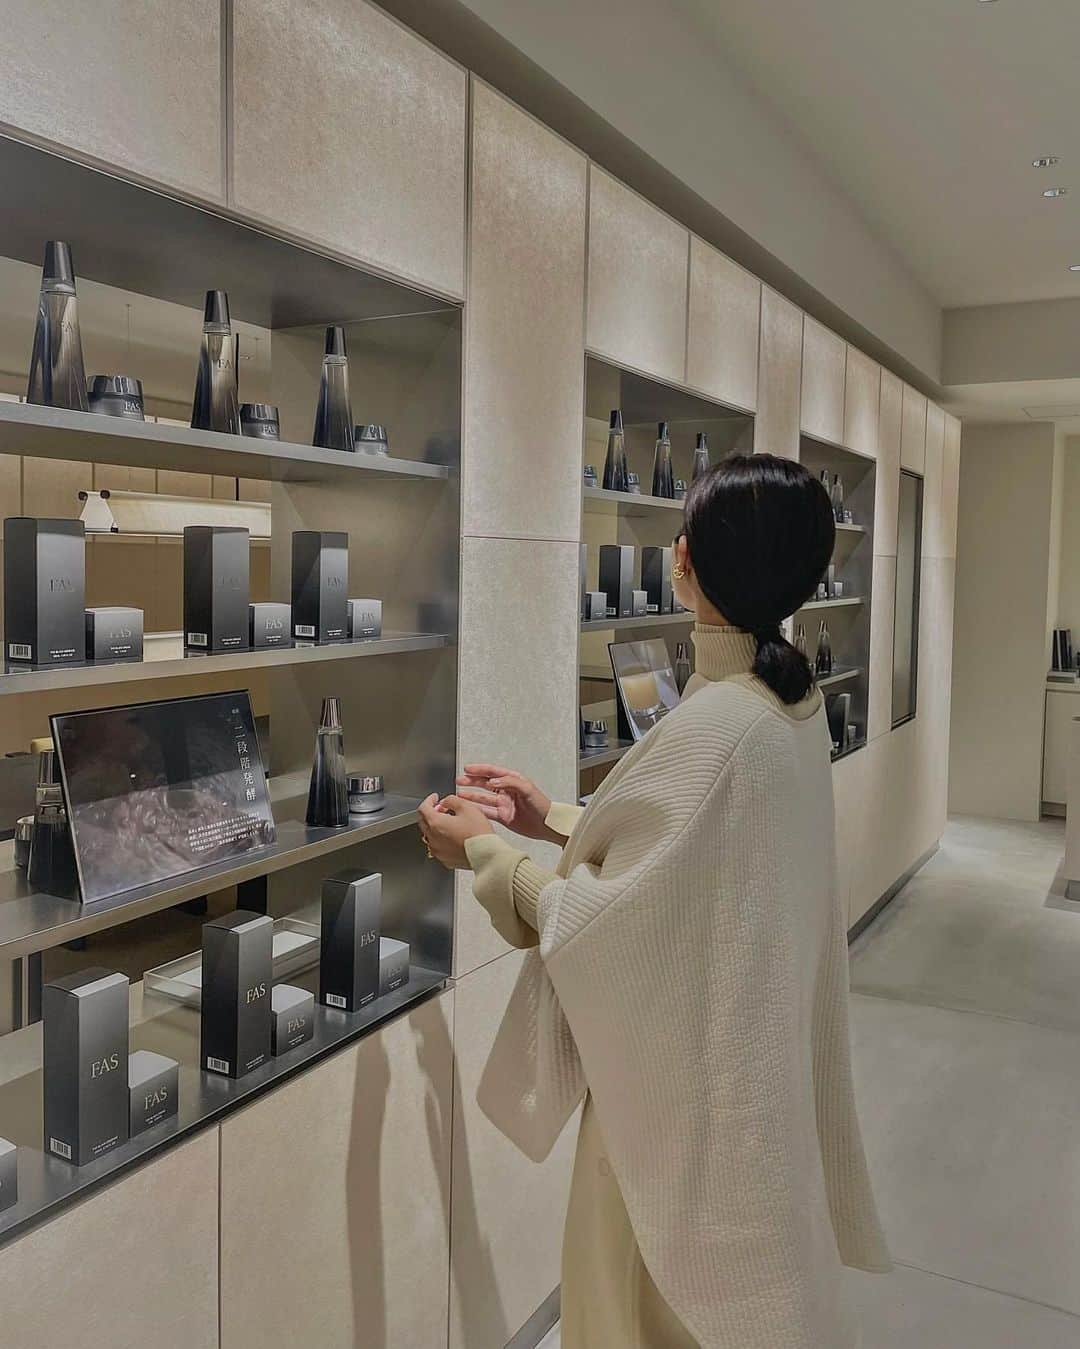 鬼辻麻衣のインスタグラム：「@fas   発酵と科学の力から誕生した 新しいスキンケアブランドの"FAS"  10/17にオープンする京都高島屋S.C.店の新店舗は 広々とした店内におもてなしスペースもあって 内装のコンセプトまでとても素敵でした🇯🇵  738種類もの成分を含む黒米発酵液*を使用した 贅沢なローションに、 シワ改善が期待できるこっくりと重めなクリーム。 重めなようなのに、肌なじみの良さにびっくり🫢✨ 使い続けて透明感のあるお肌を目指します🥹  店舗にて商品を購入された方は、期間限定で まだ未発売の美容液のミニボトルをいただけますよ🌿 京都に立ち寄る際は是非試してみてください✨  *サッカロミセス/コメ発酵液(保湿成分)  #PR #FAS #ファス  #発酵エイジングケア #京都高島屋」